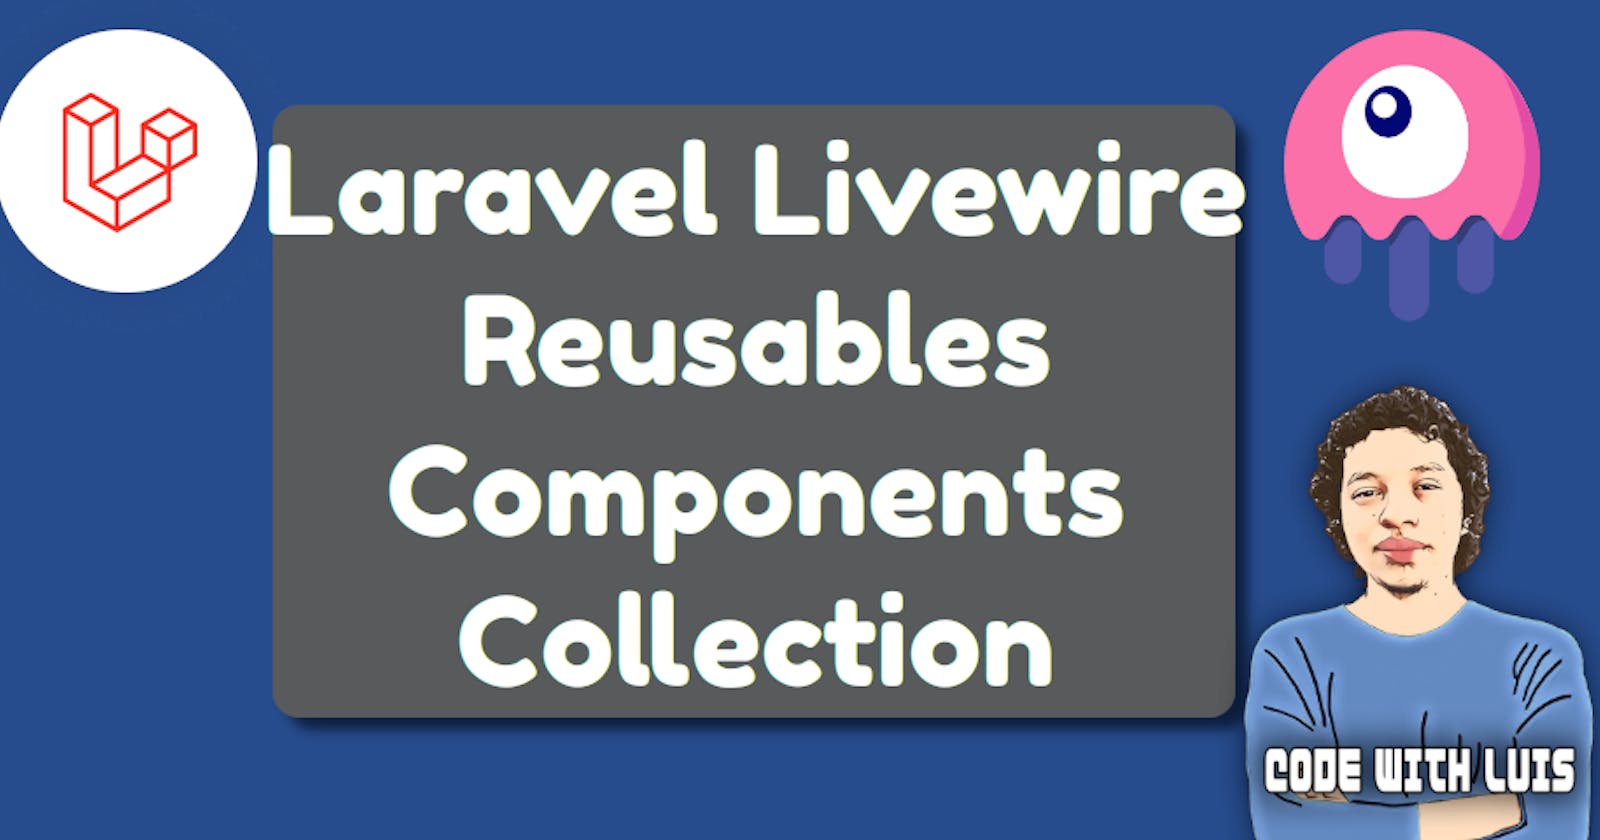 Laravel Livewire Reusables Components Collection